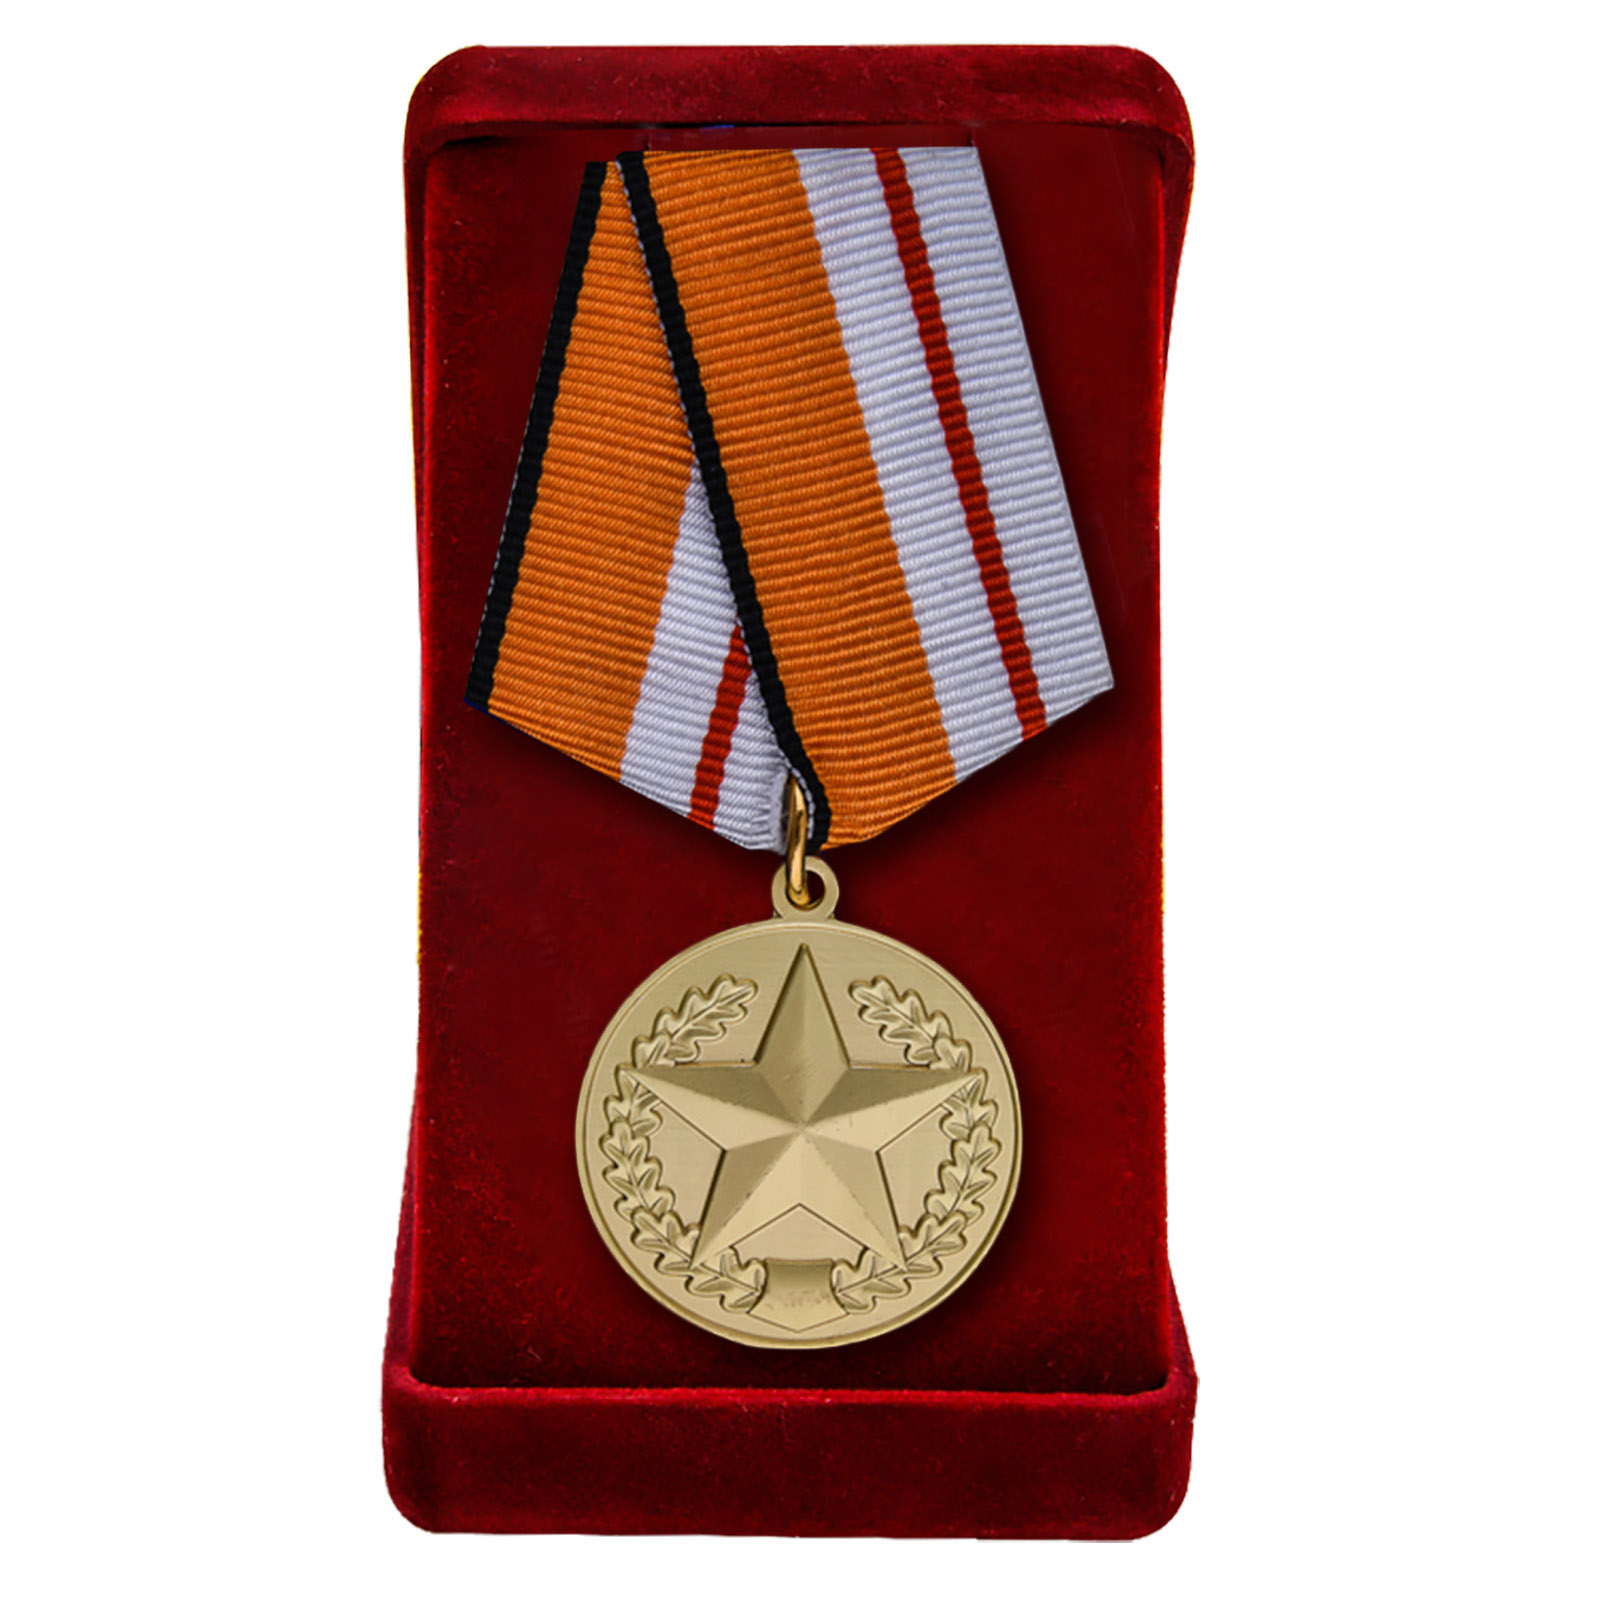 Медаль "За отличие в соревнованиях" 1 степени МО РФ